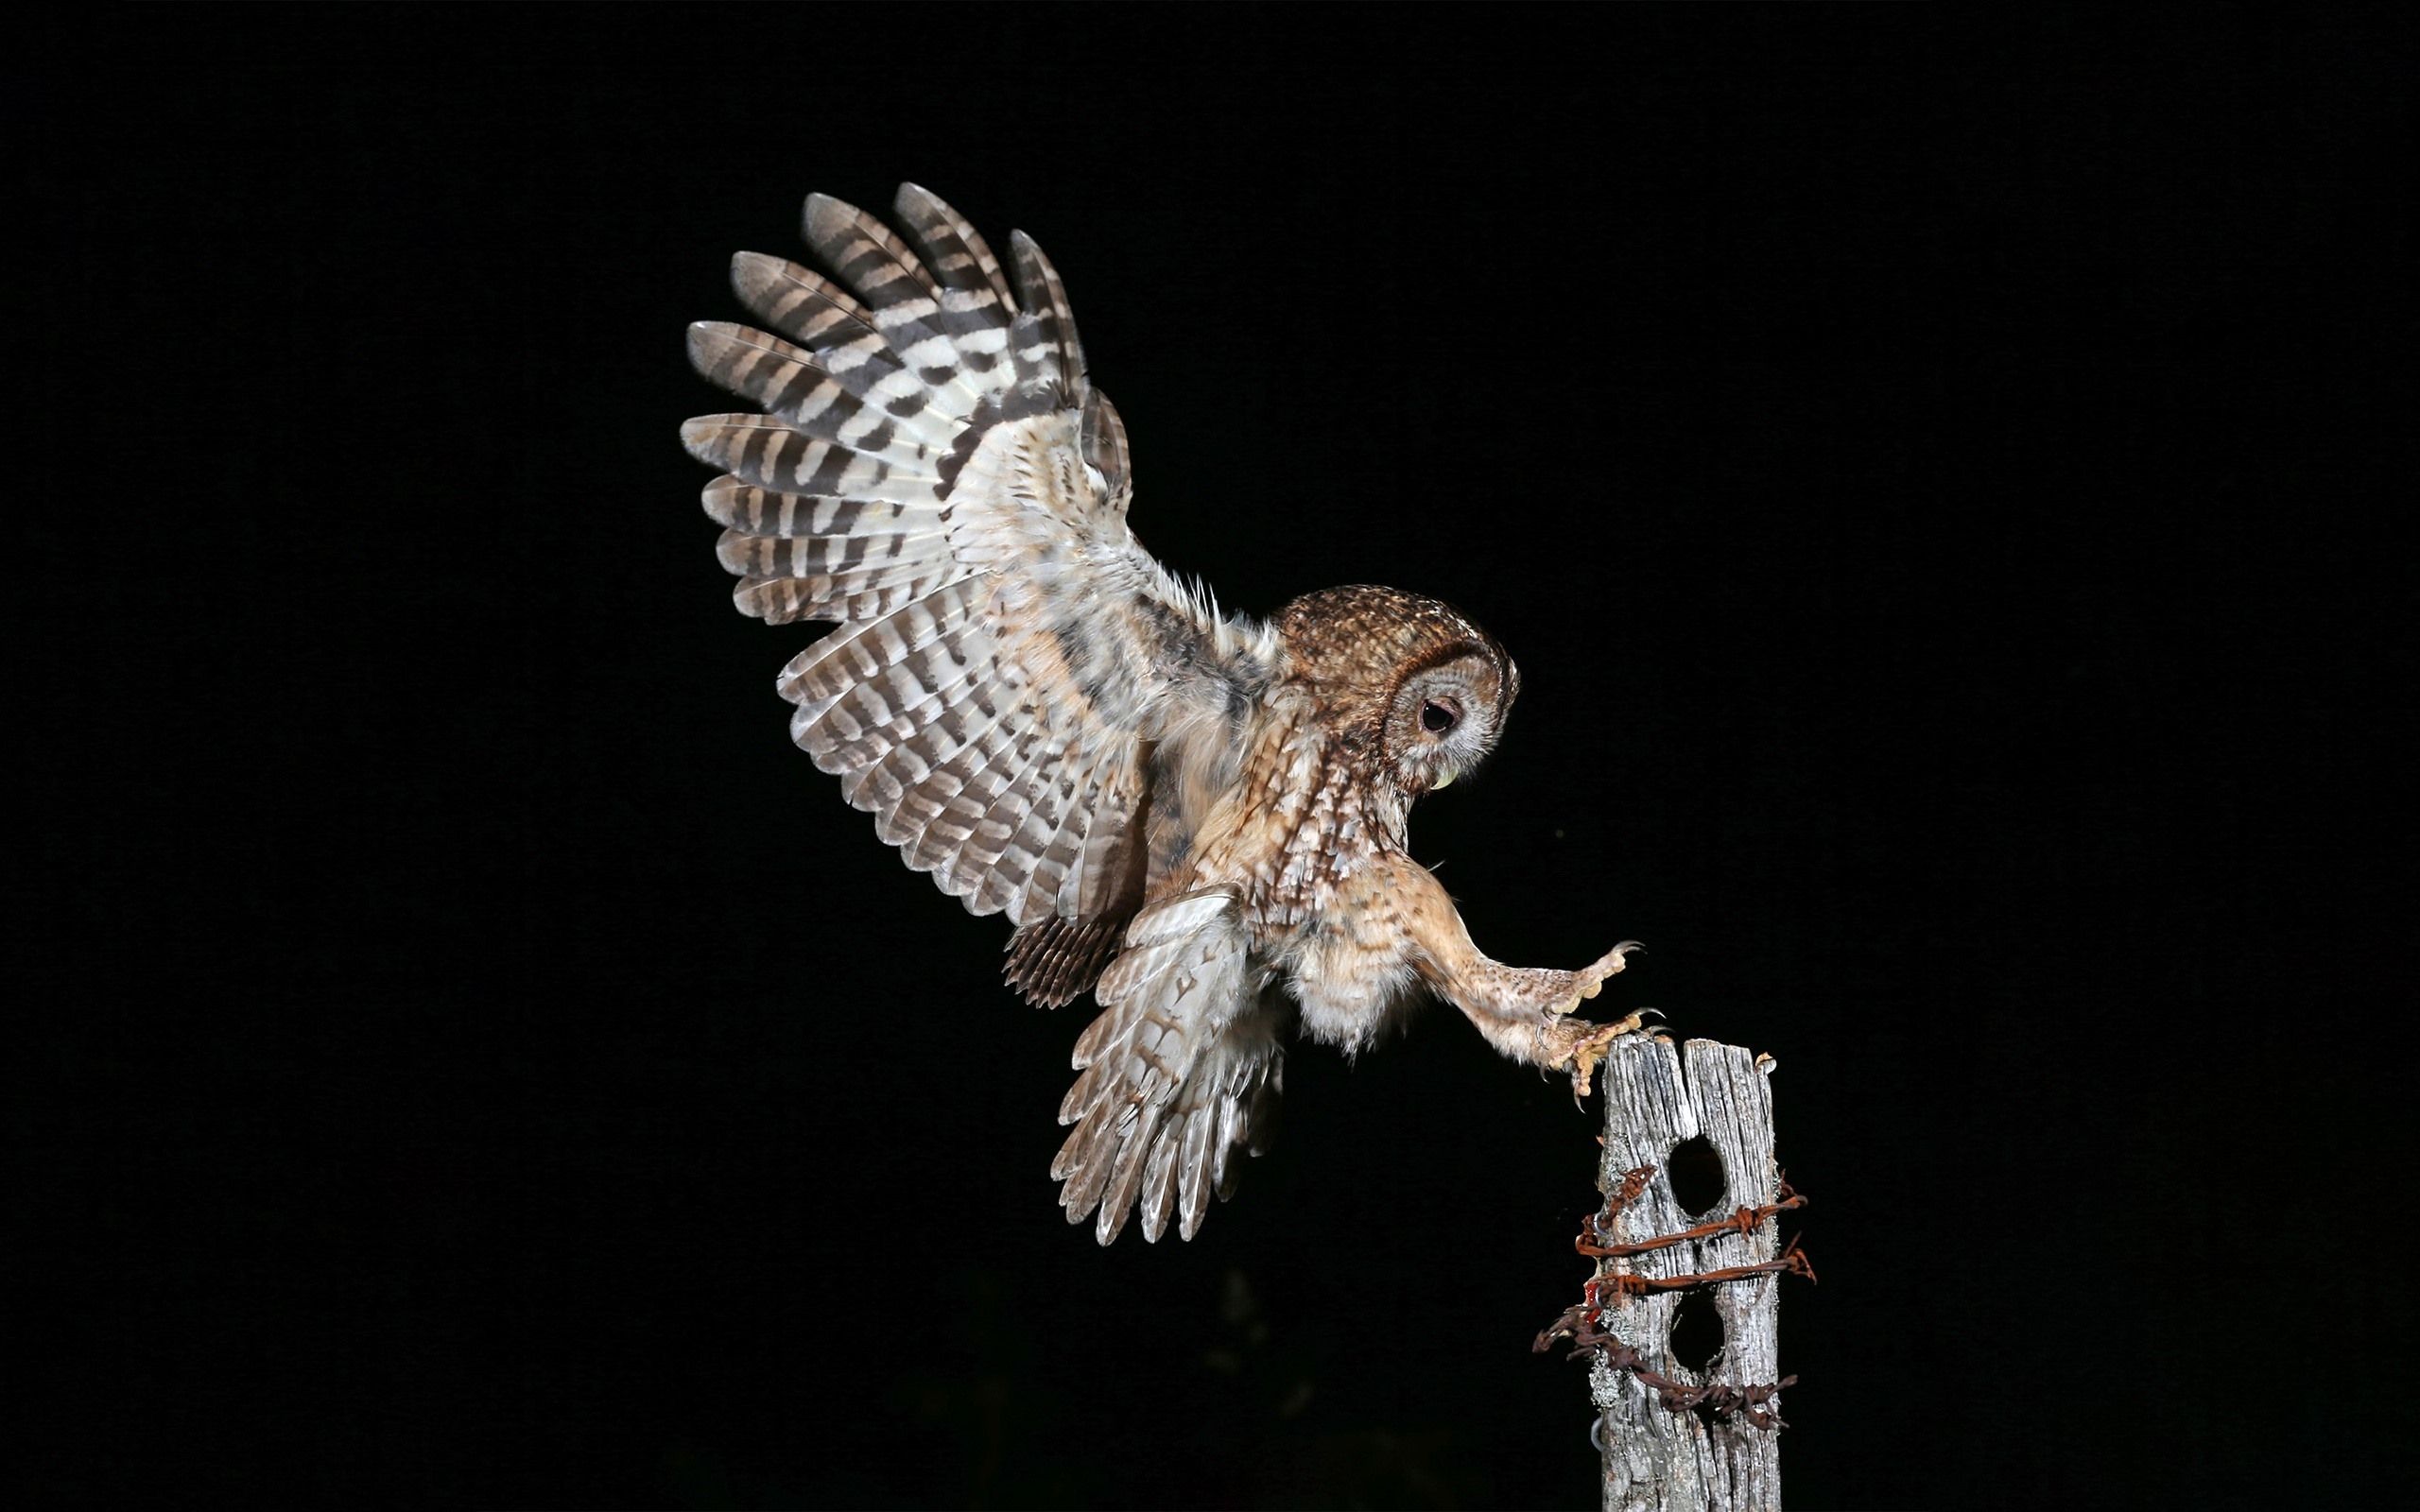 night owl hd